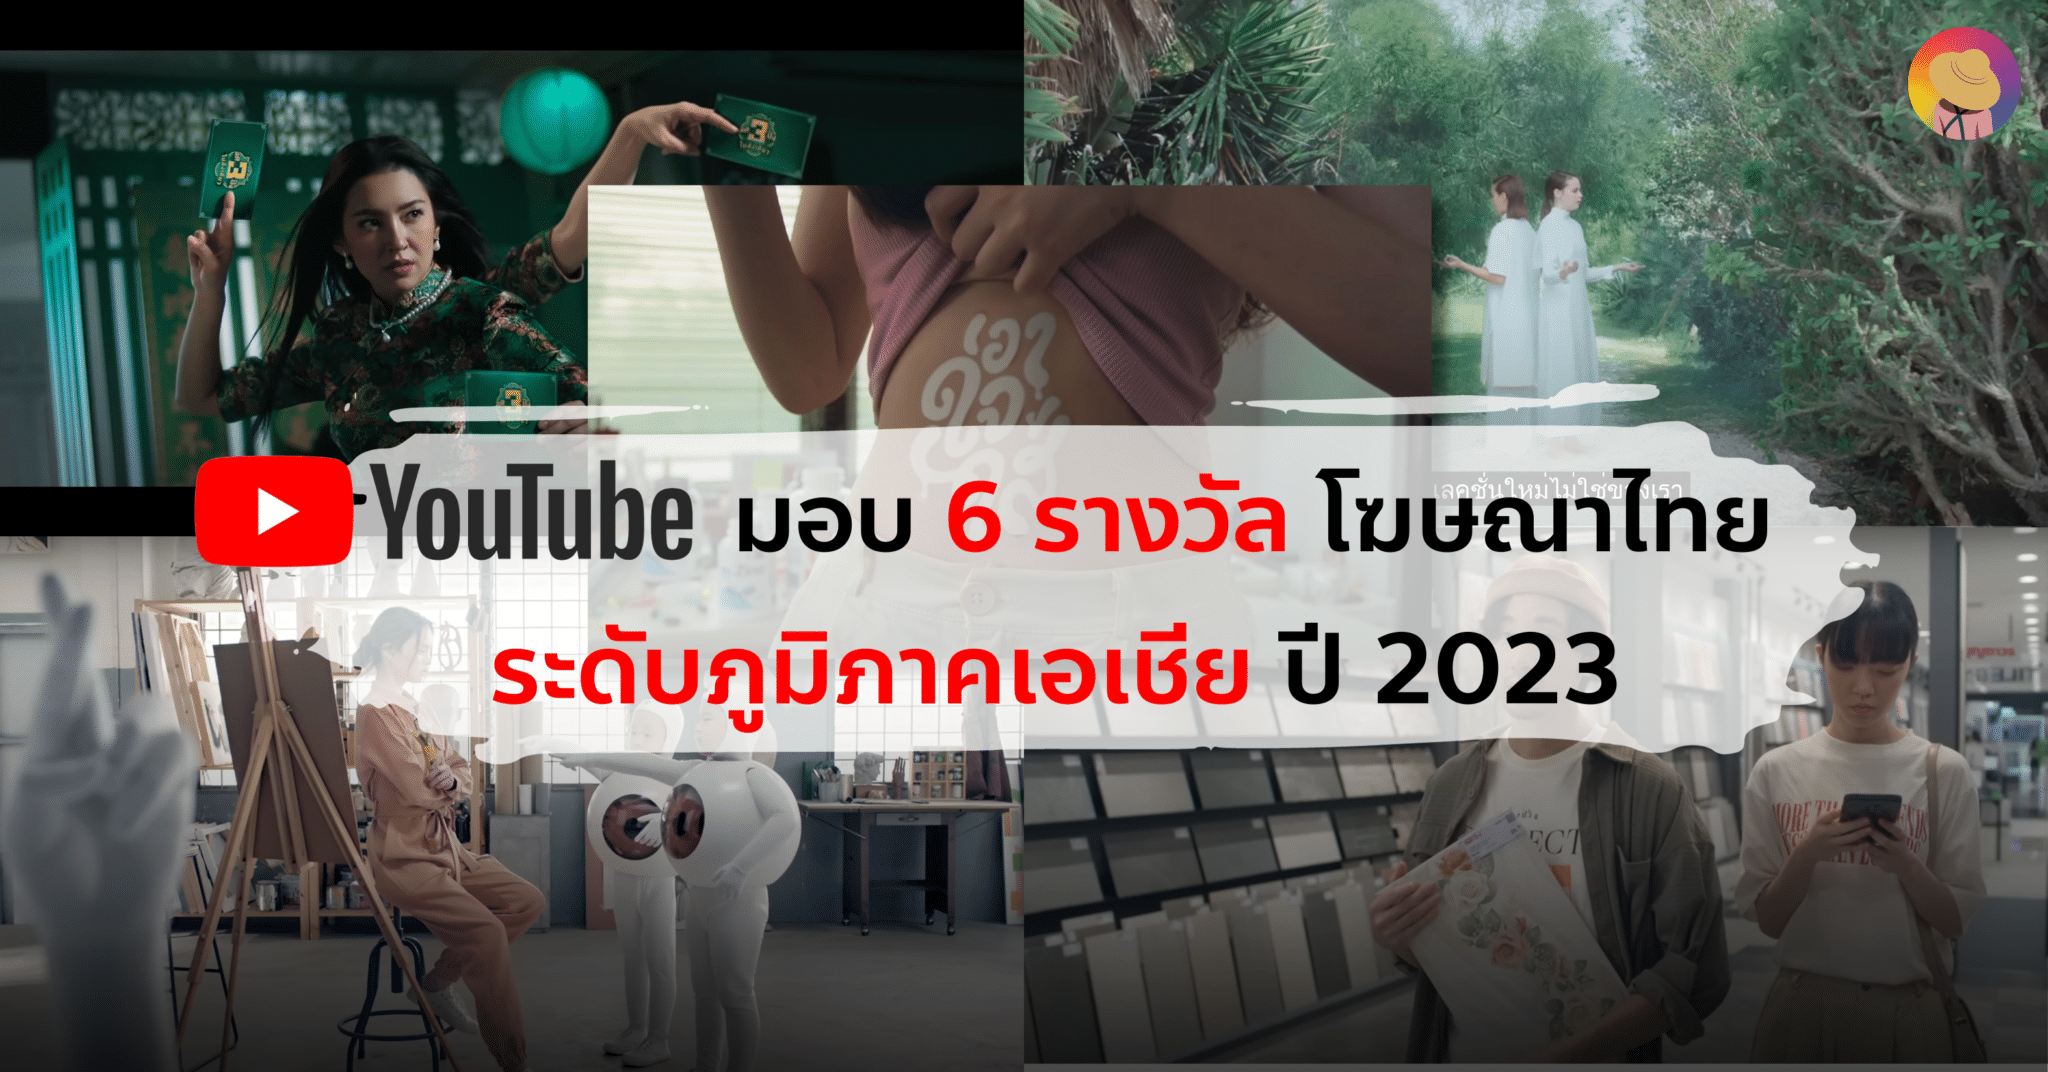 Youtube มอบ 6 รางวัล โฆษณาไทย ระดับภูมิภาคเอเชีย ปี 2023